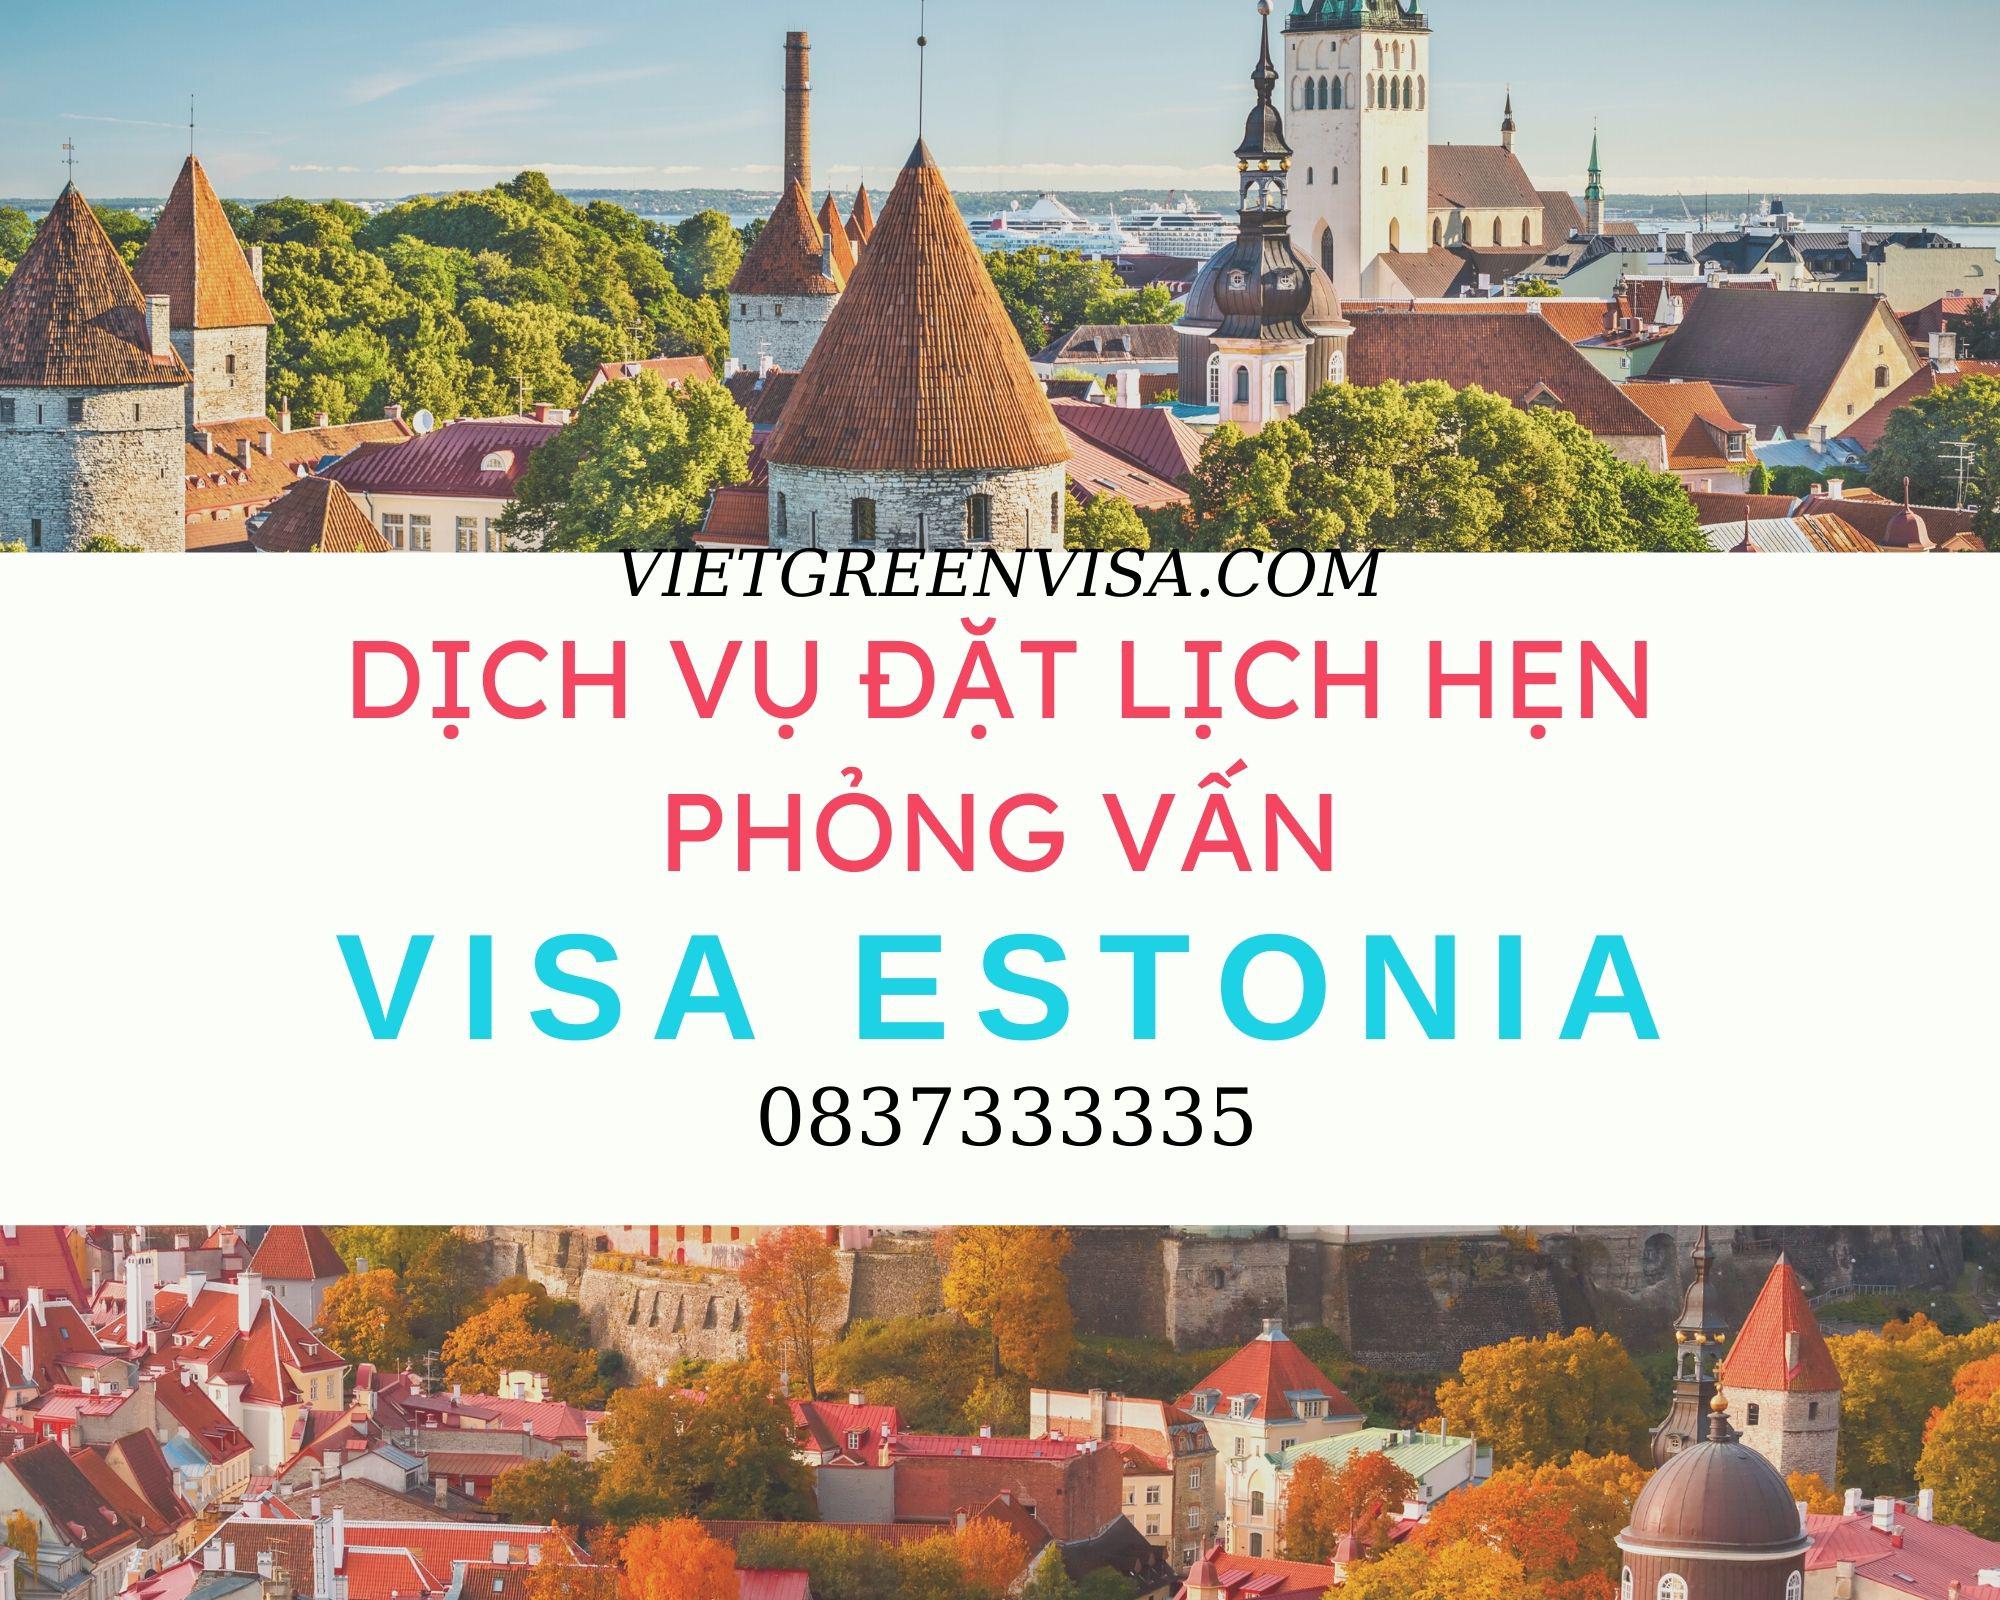 Hỗ trợ đặt lịch hẹn phỏng vấn visa Estonia nhanh chóng